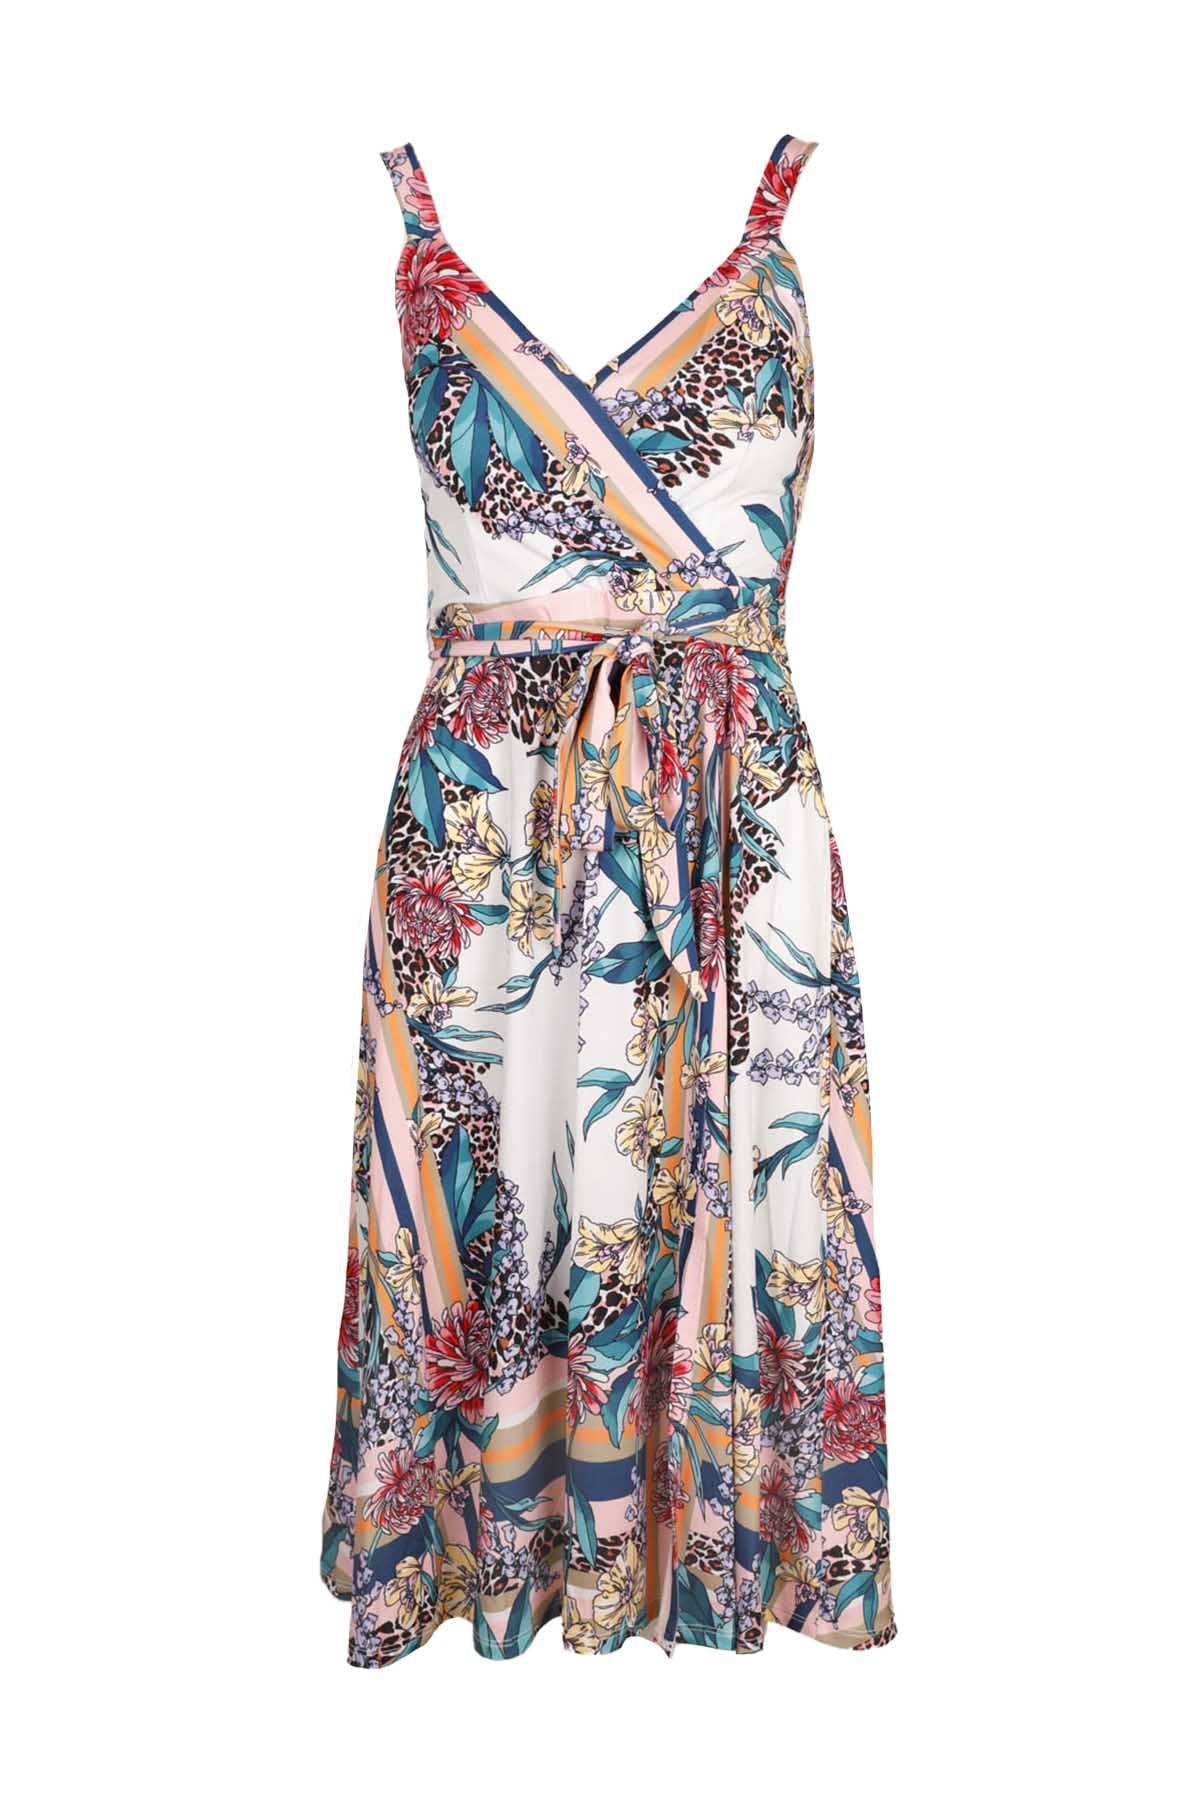 Hale Bob Çiçek Desenli Askılı Kruvaze Elbise-Libas Trendy Fashion Store